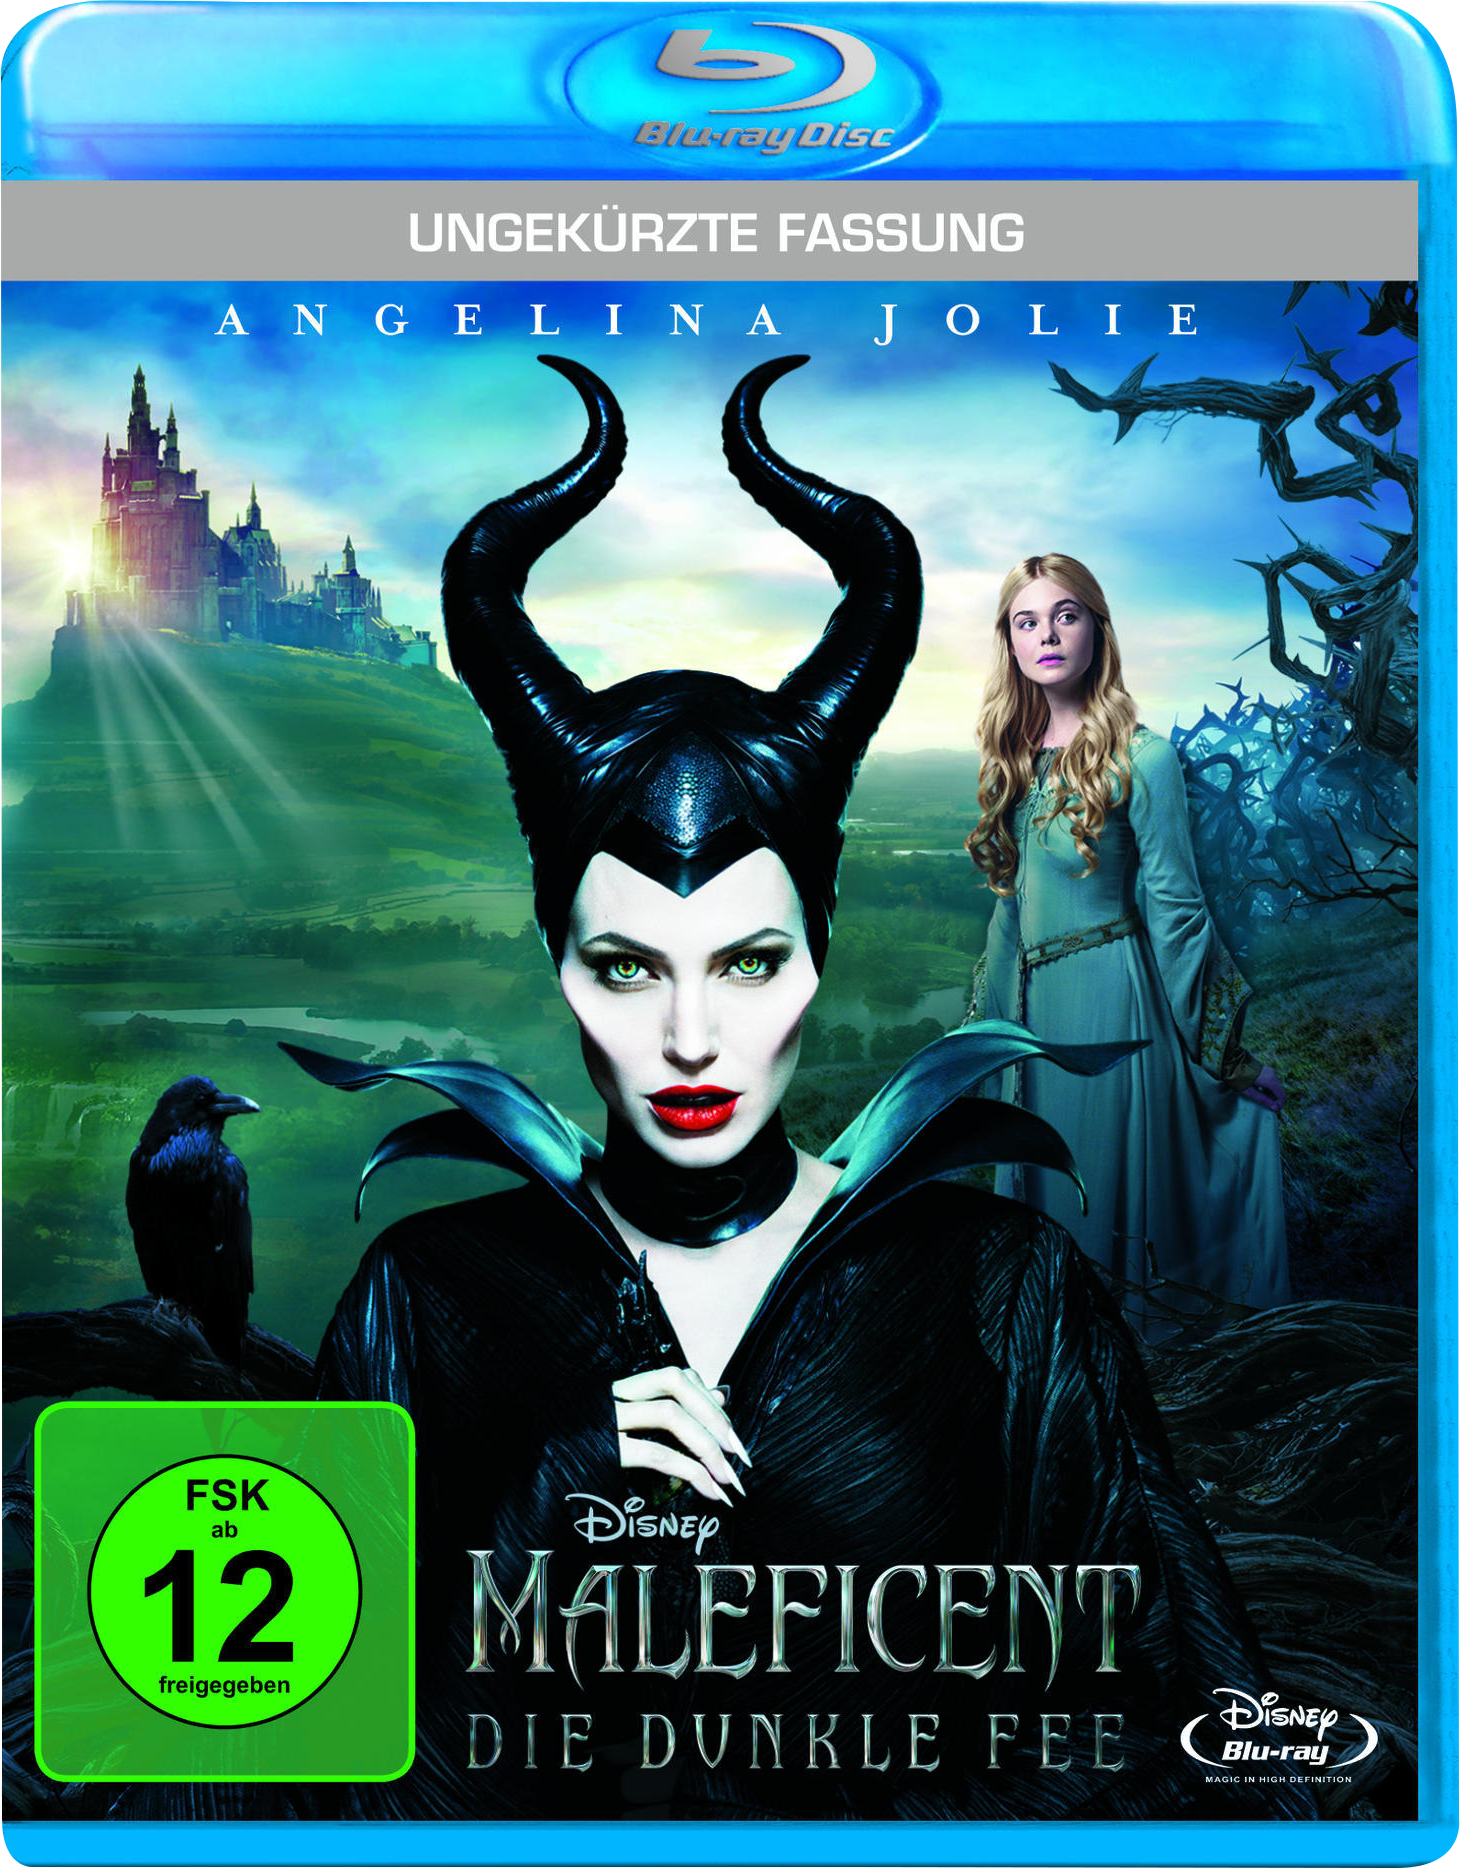 Maleficent (Ungekürzte Die Fee Blu-ray Fassung) - Dunkle